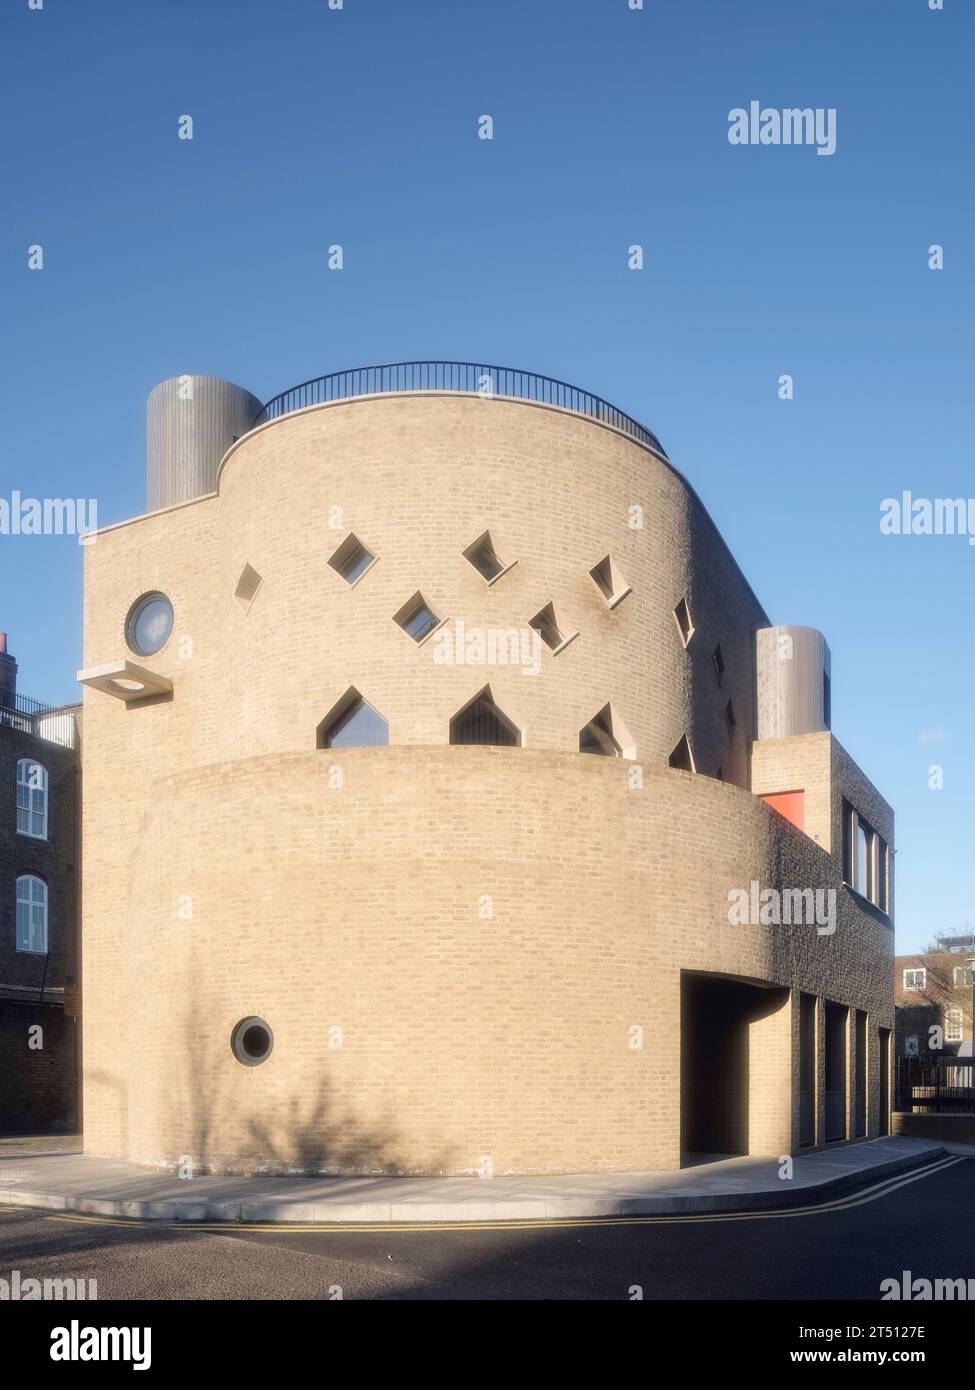 Façade en briques éclairée par le soleil avec fenêtres circulaires et en forme de losange. The Hoxton Mule - Ivy Street, Londres, Royaume-Uni. Architecte : Sam Jacob Studio, 2022. Banque D'Images